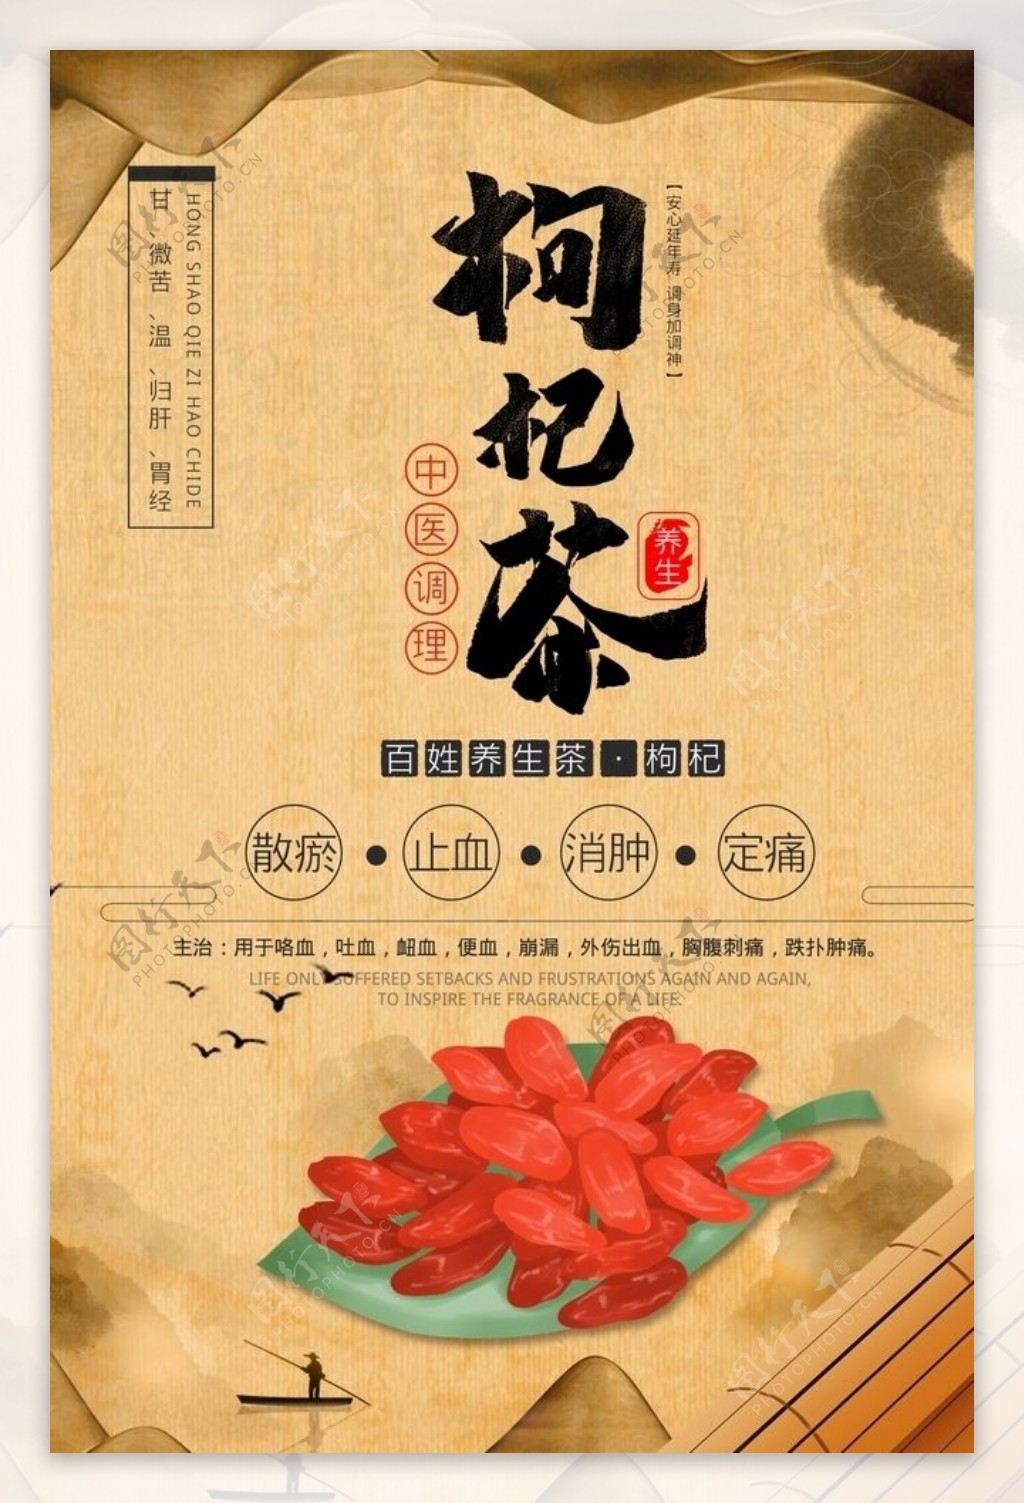 简约水墨中国风枸杞茶宣传海报